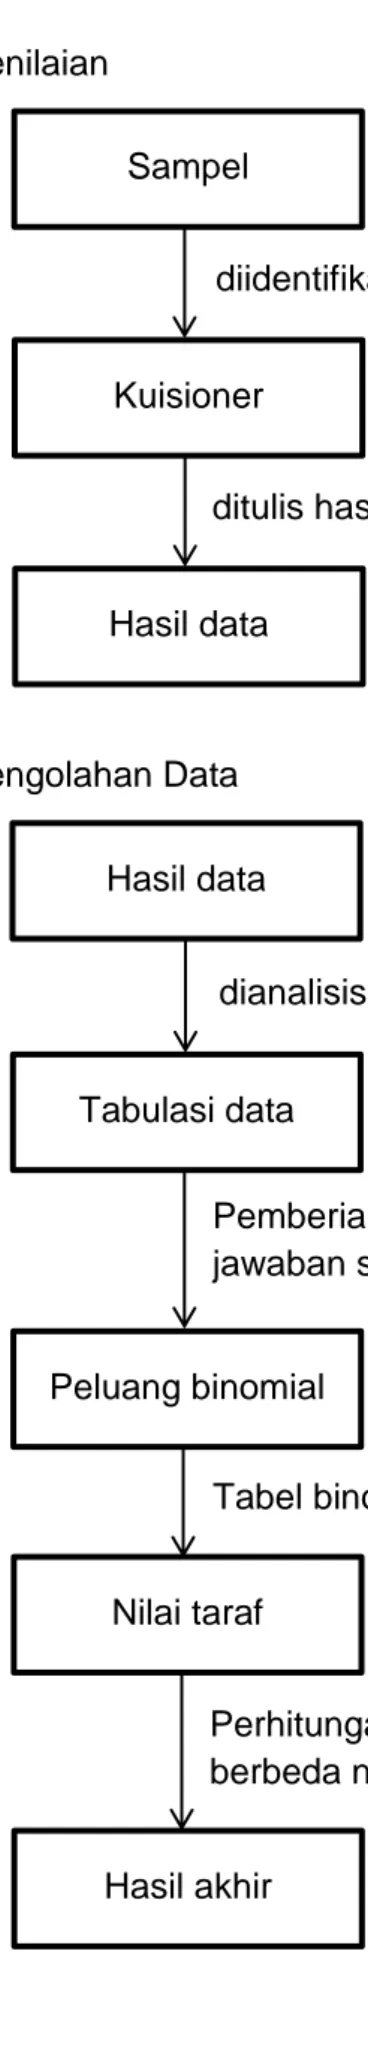 Tabel binomial digunakan untuk analisis  